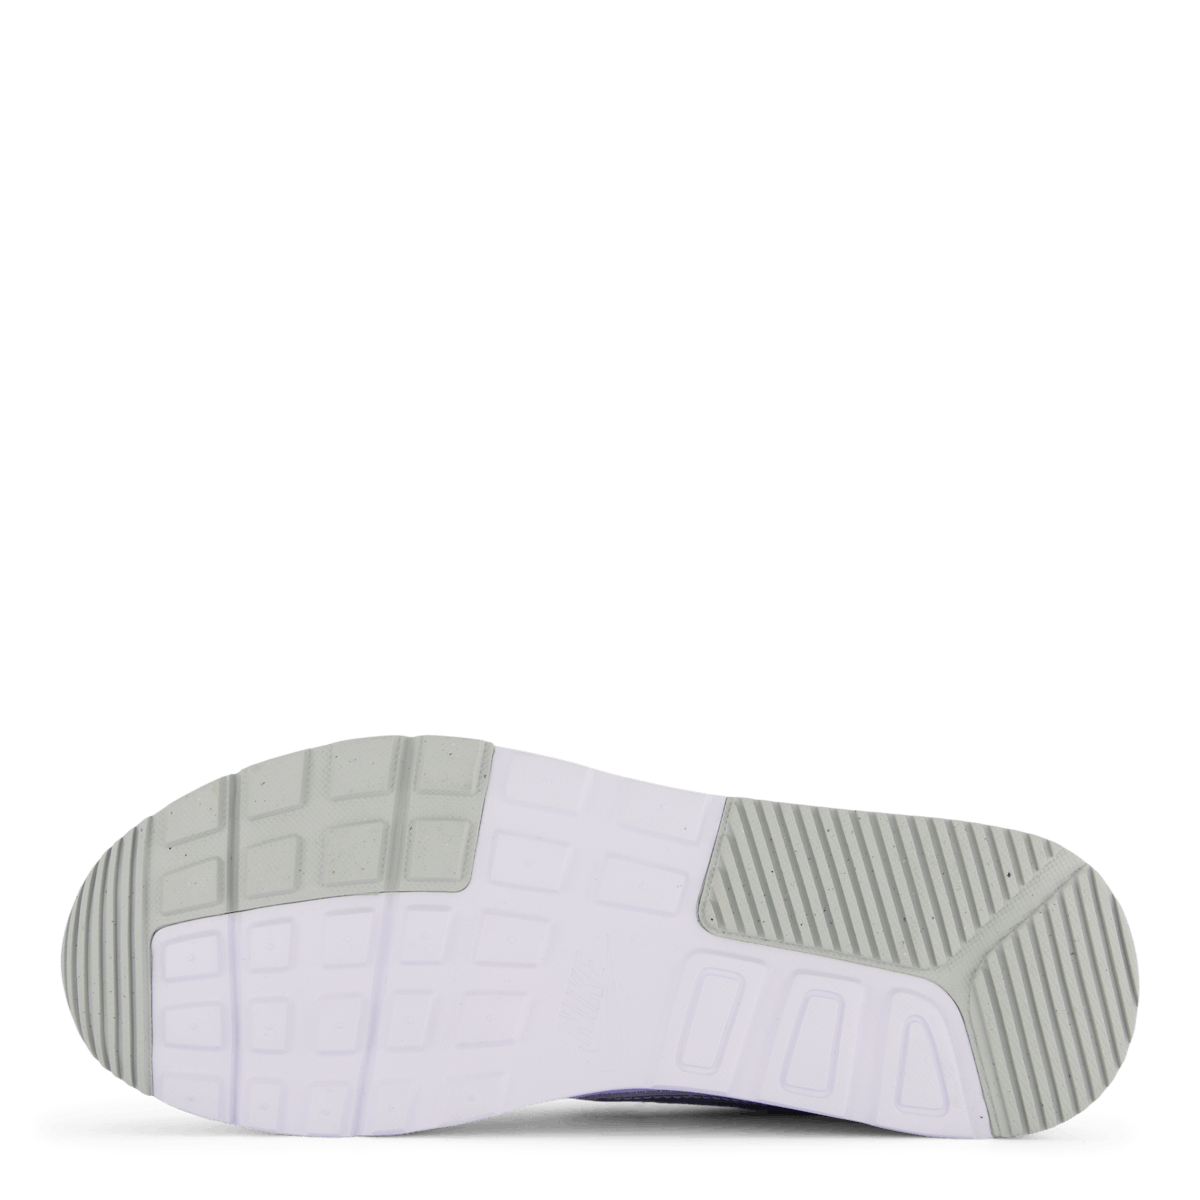 Air Max SC Women's Shoes WHITE/MTLC PLATINUM-PURE PLATINUM